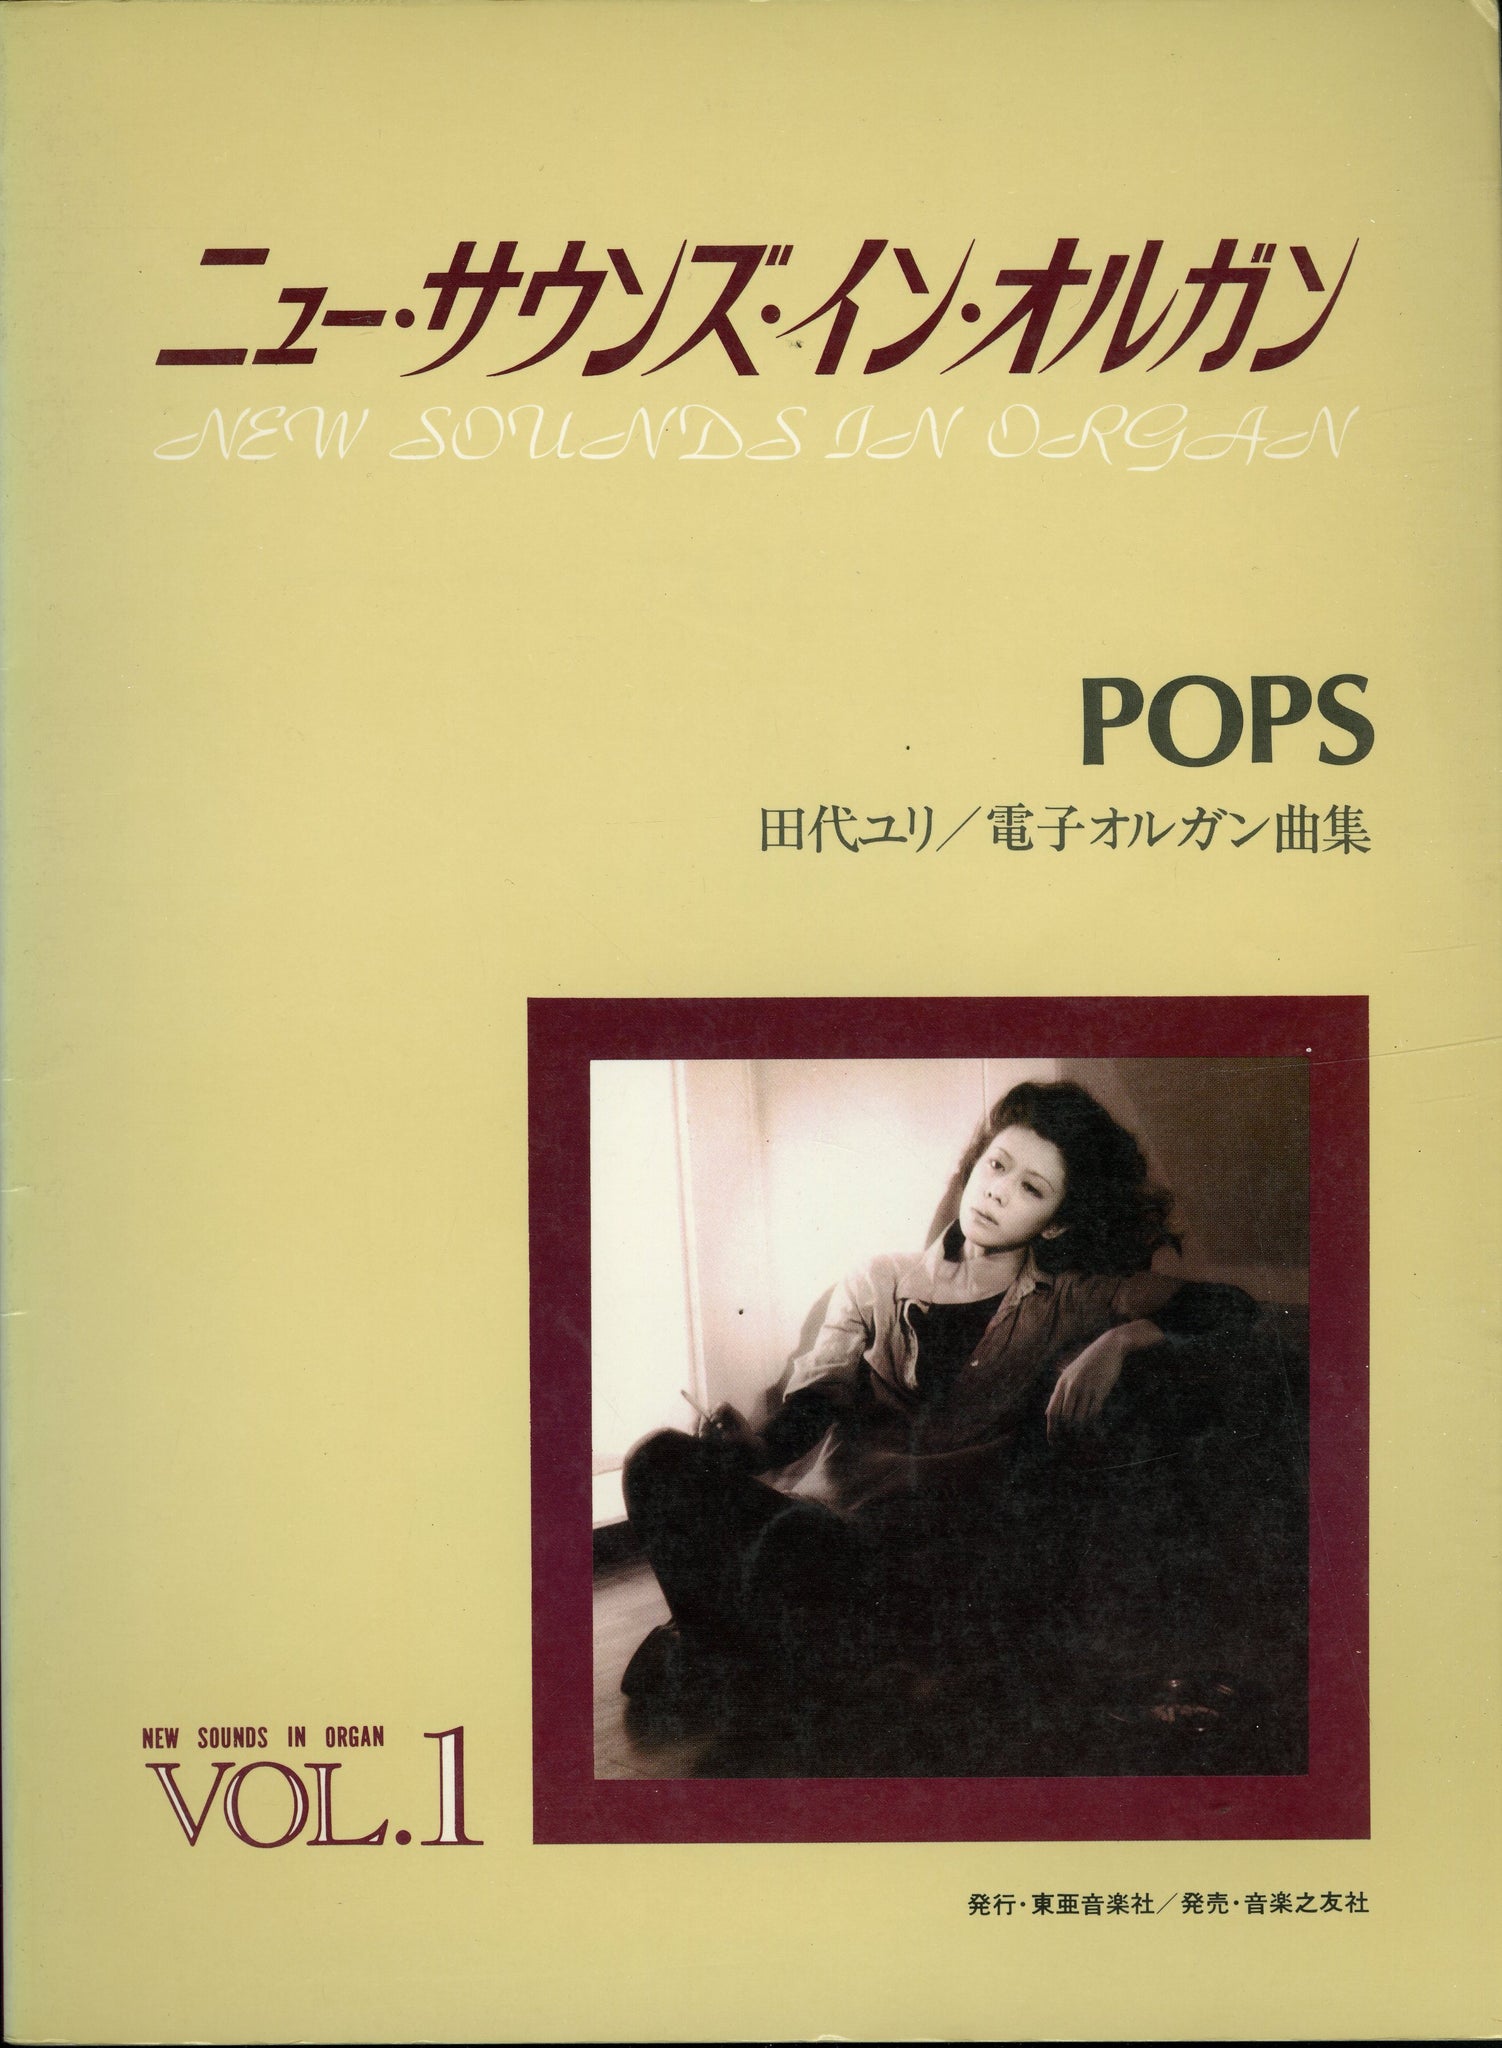 ニュー サウンズ イン オルガン Vol 1 Pops 田代ユリ 電子オルガン曲集 楽譜 Books Channel Store